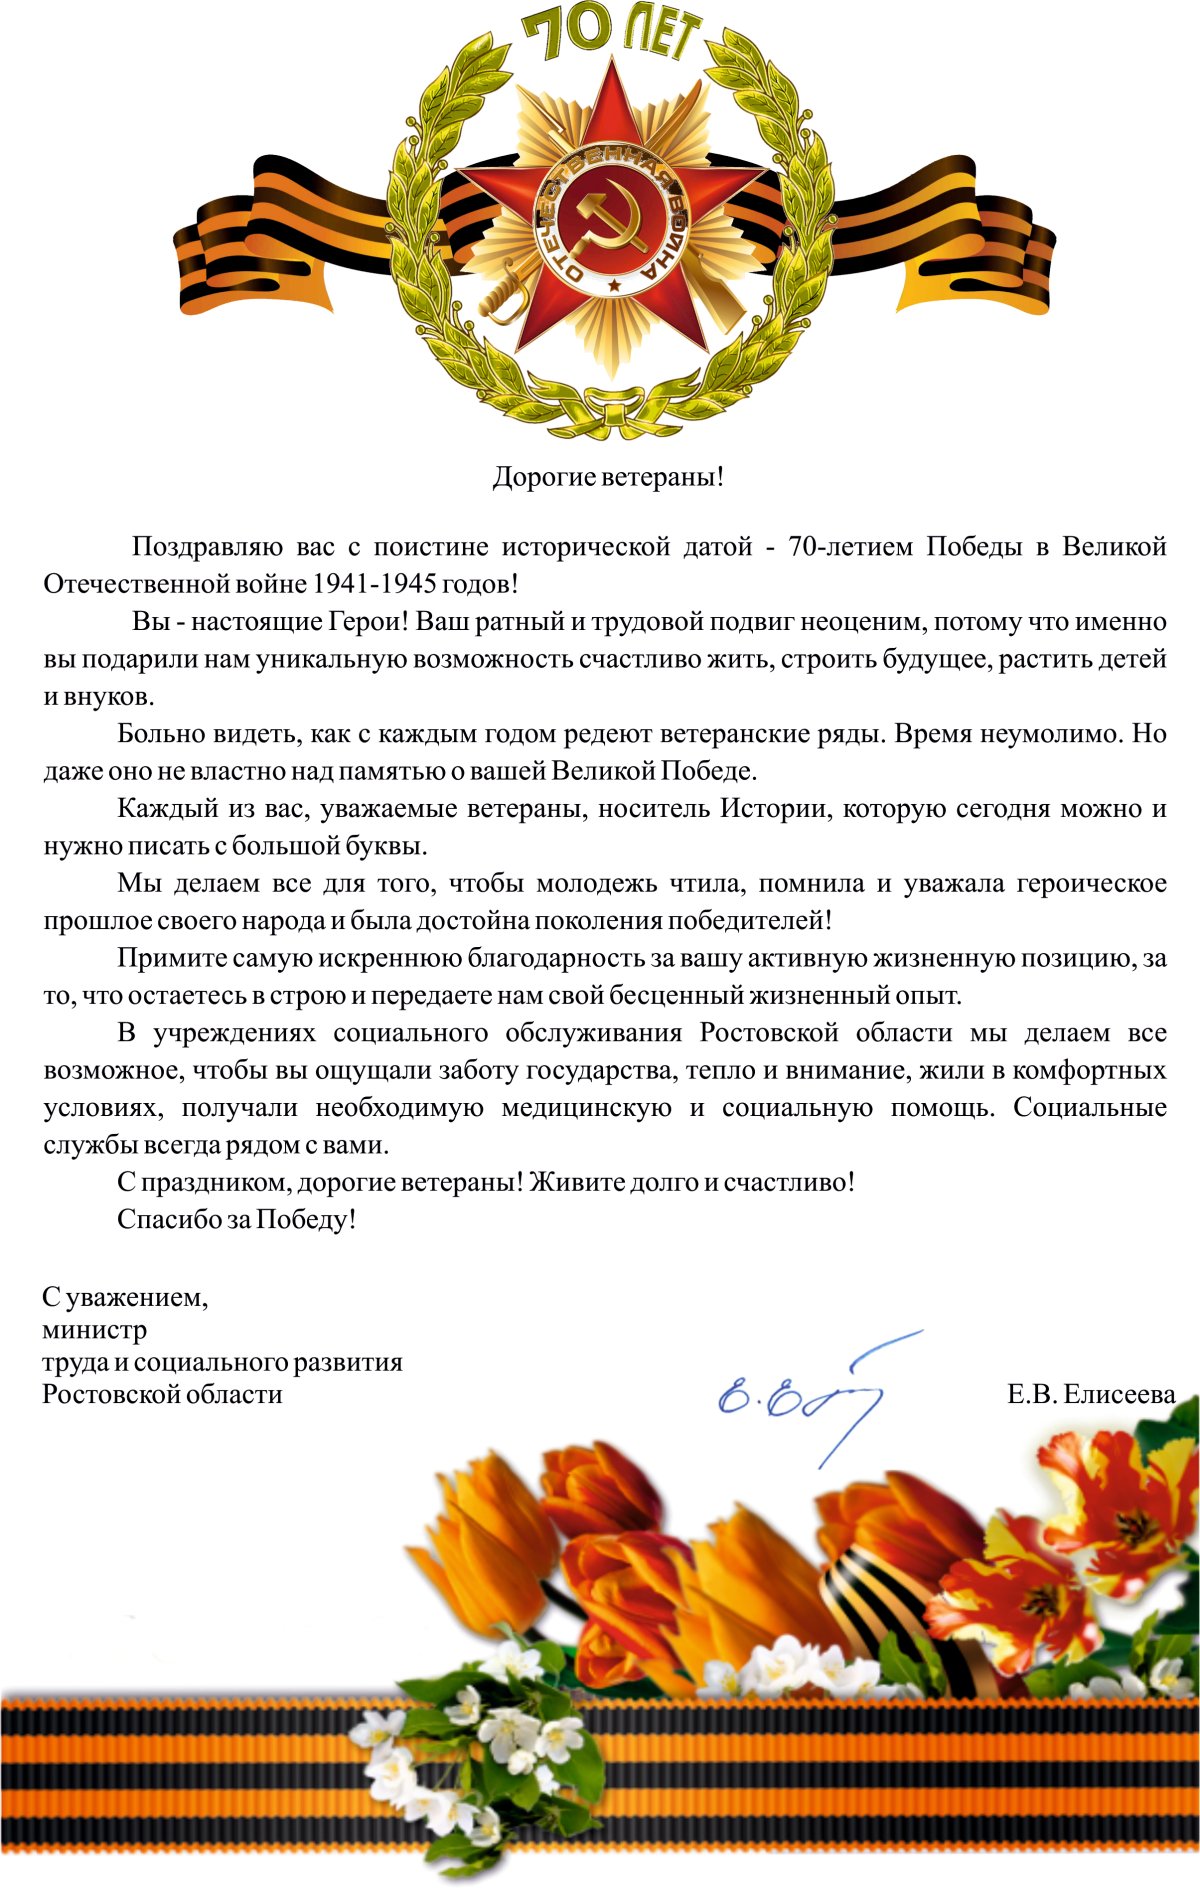 Поздравление с Днем ветерана МВД России - Официальный сайт Юрлинского муниципального округа